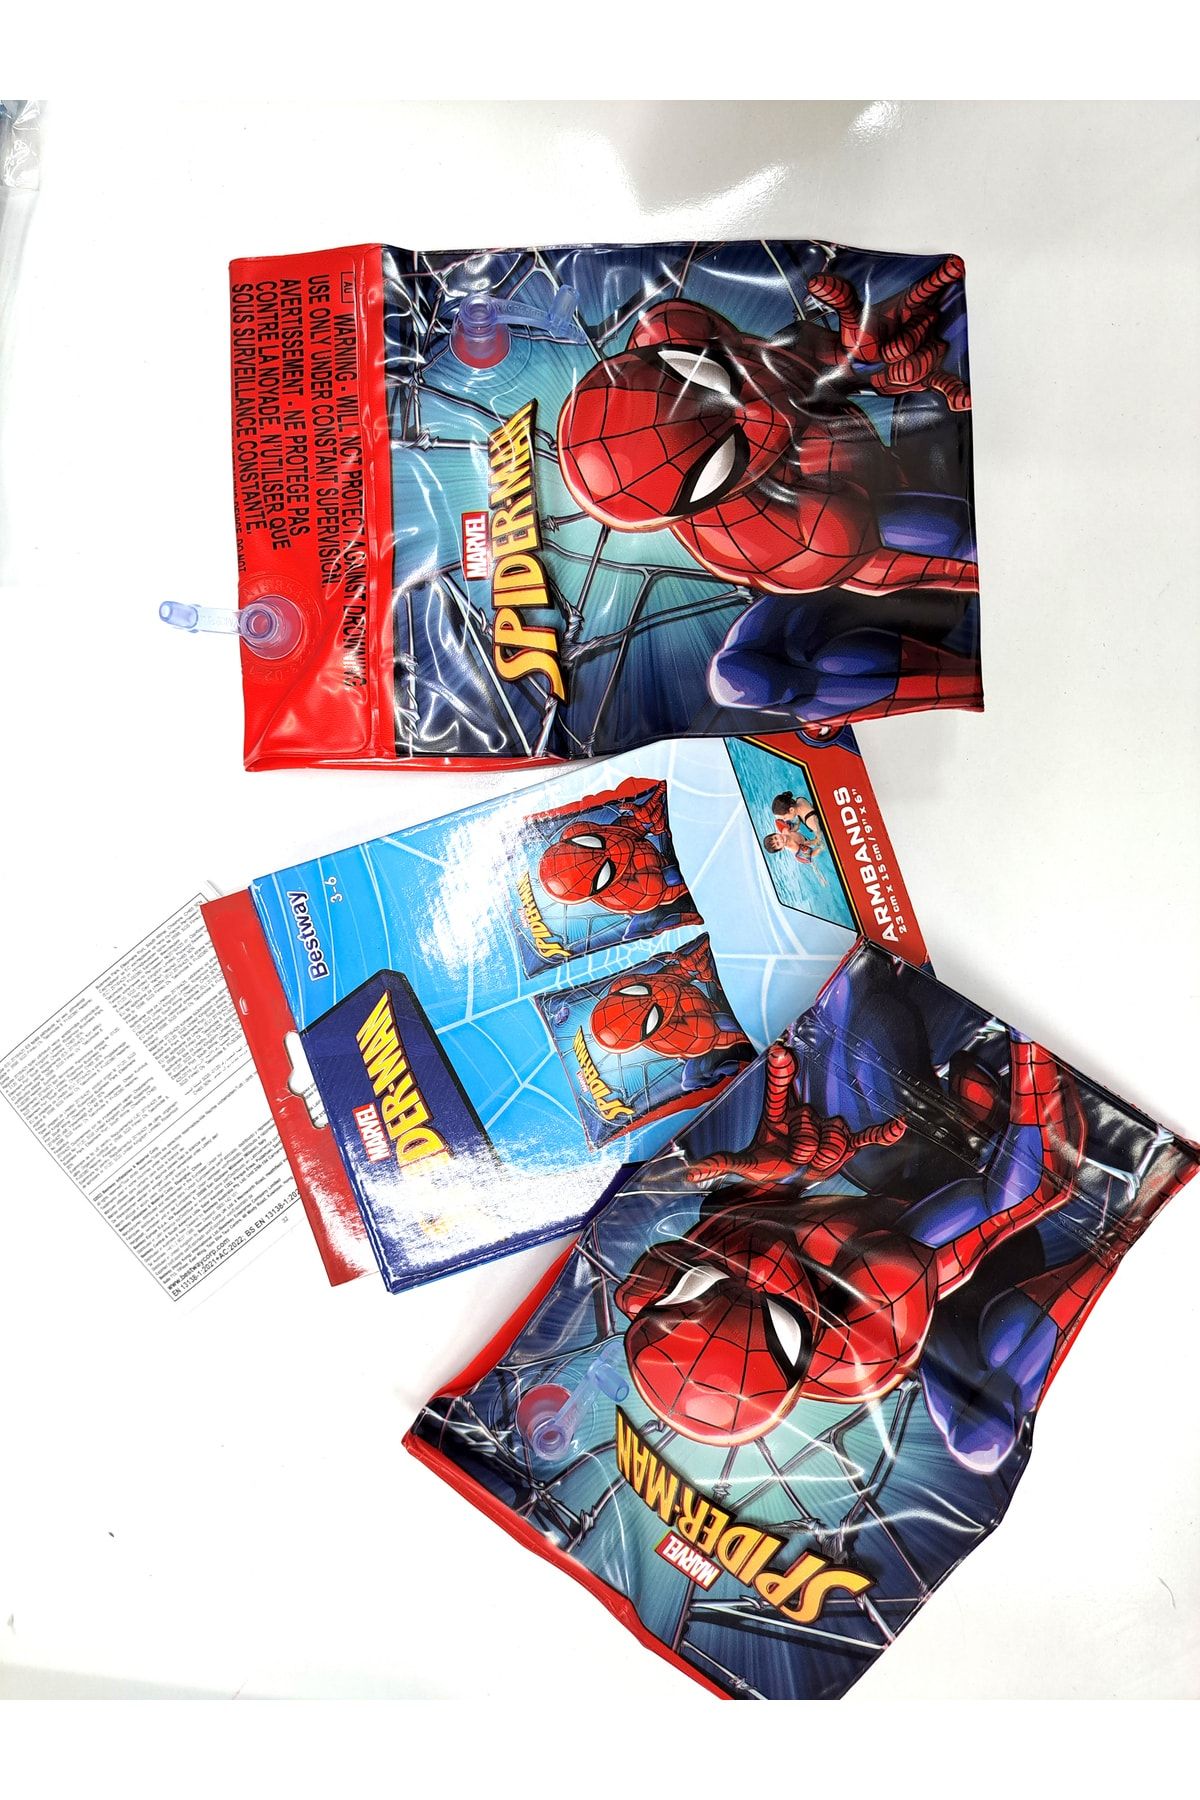 Bestway Erkek Çocuk Spider-Man Desenli Kolluk Marvel Örümcek Adam Figürlü Deniz-Havuz Yüzme Kolluğu 20X12 CM